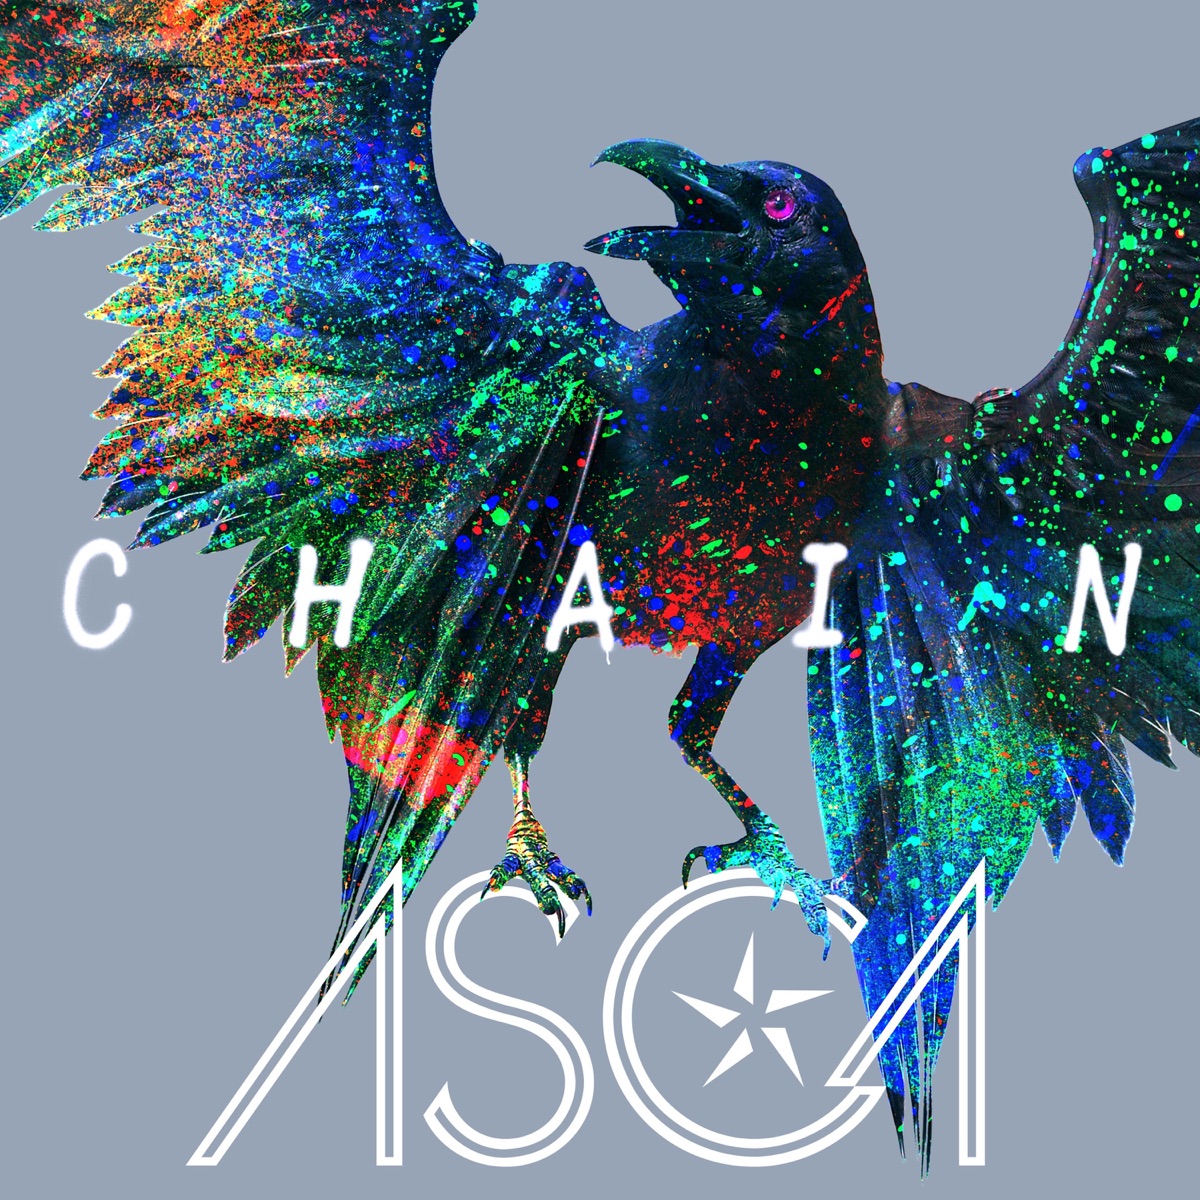 『ASCA - CHAIN』収録の『CHAIN』ジャケット